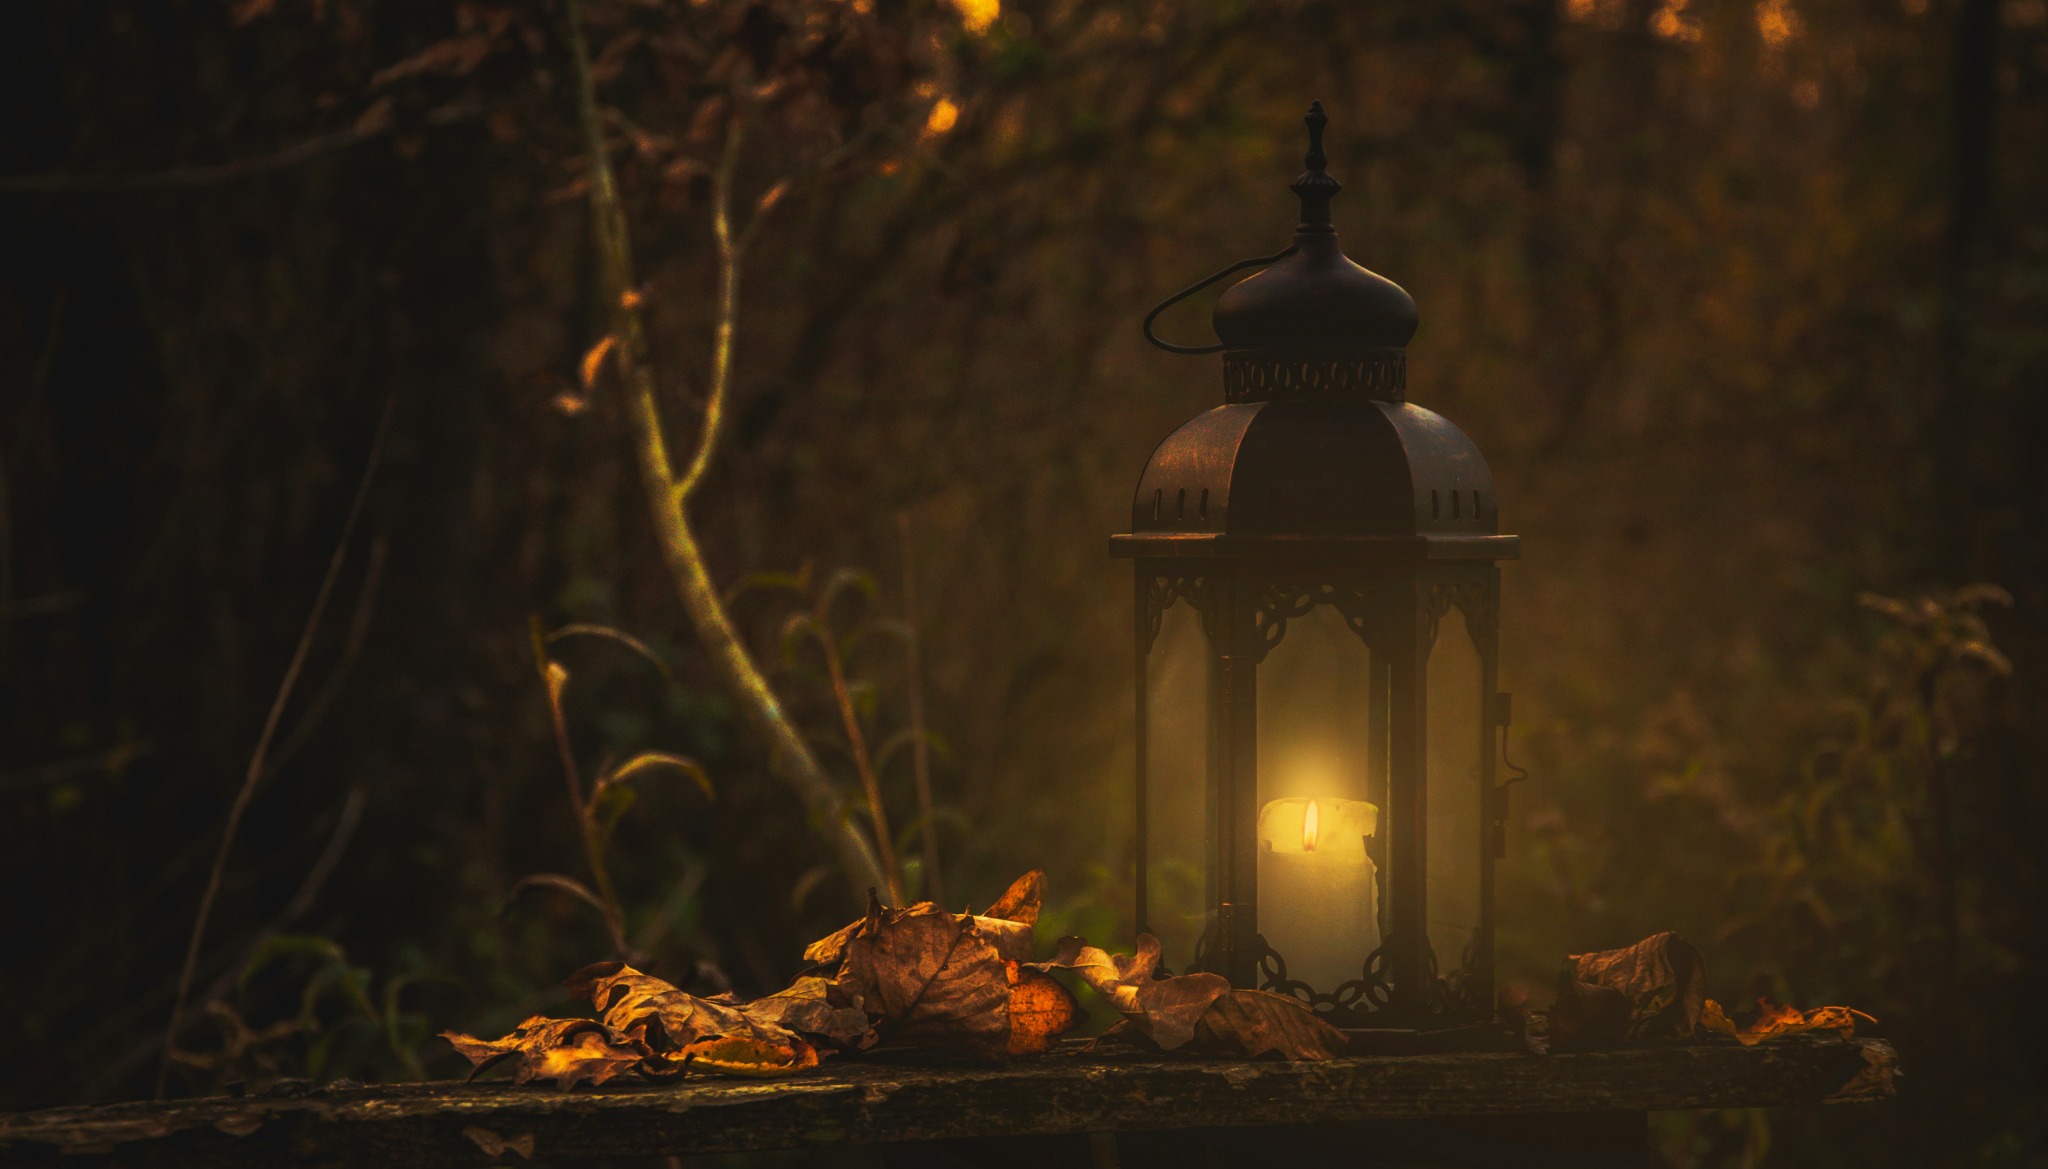 Autumn lantern fallen leaves